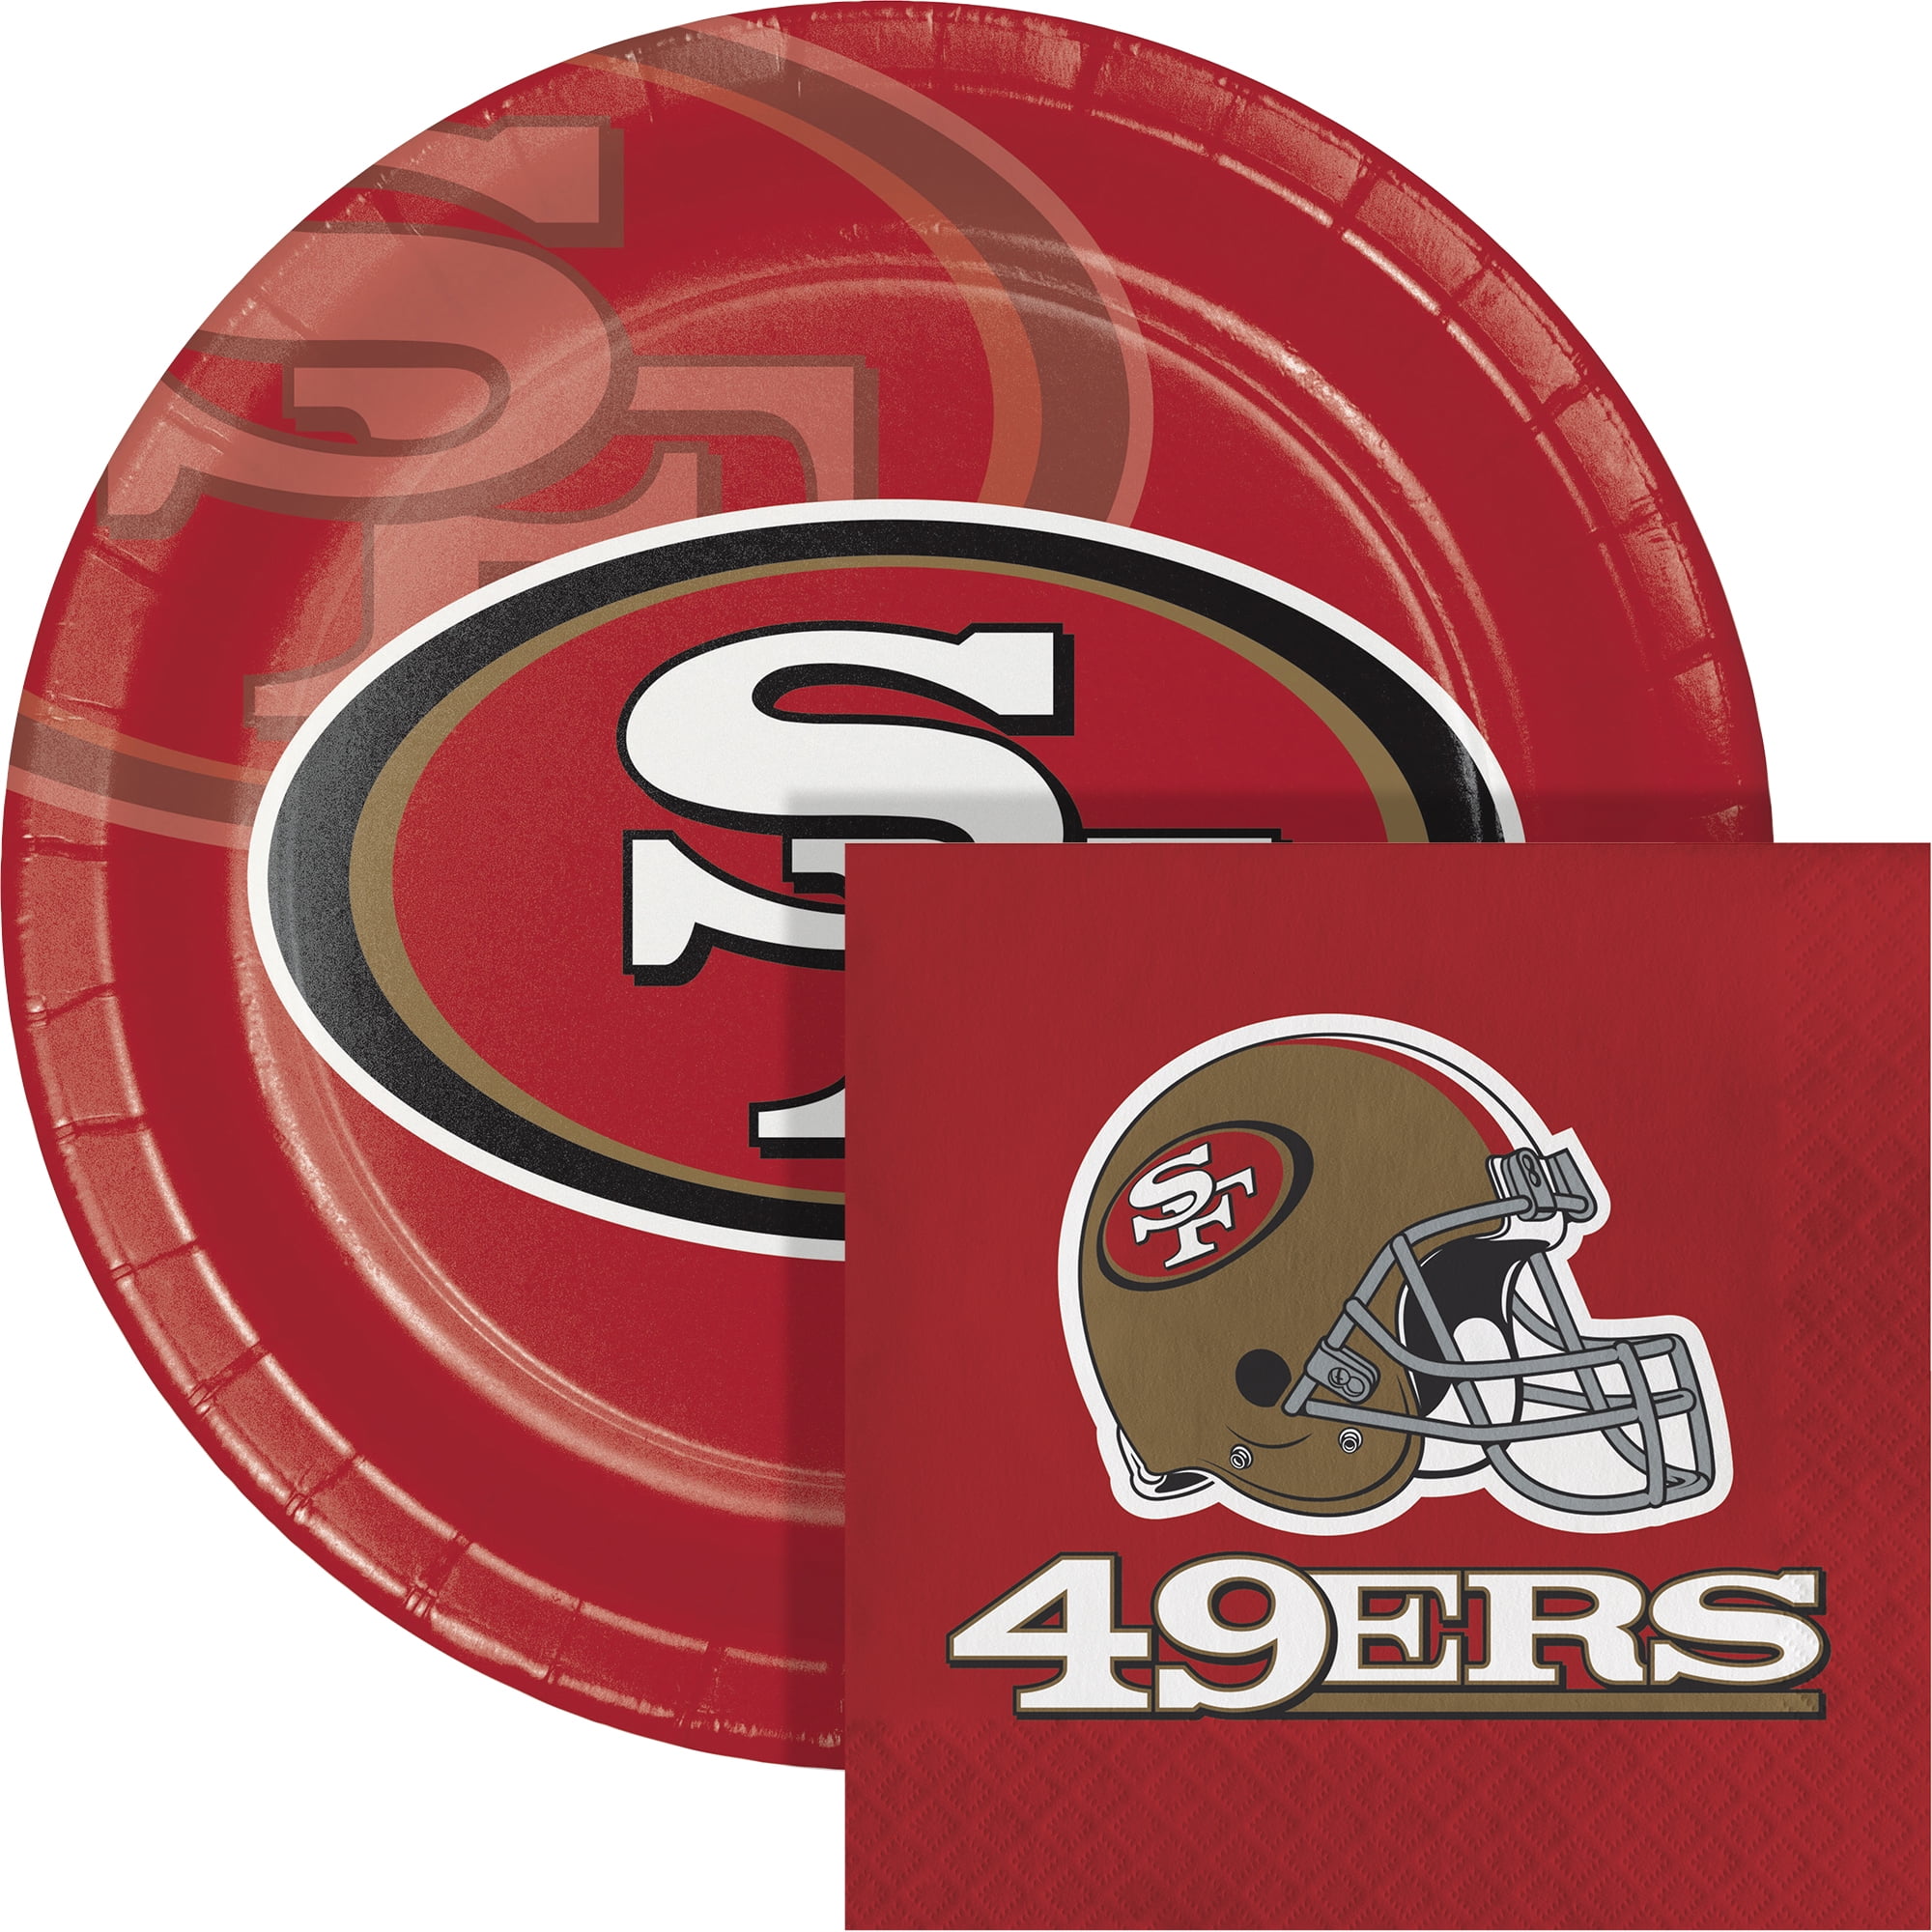 Tapete Boas Vindas NFL SAN FRANCISCO 49ERS - BIG Logo - FIRST DOWN -  Produtos Futebol Americano NFL